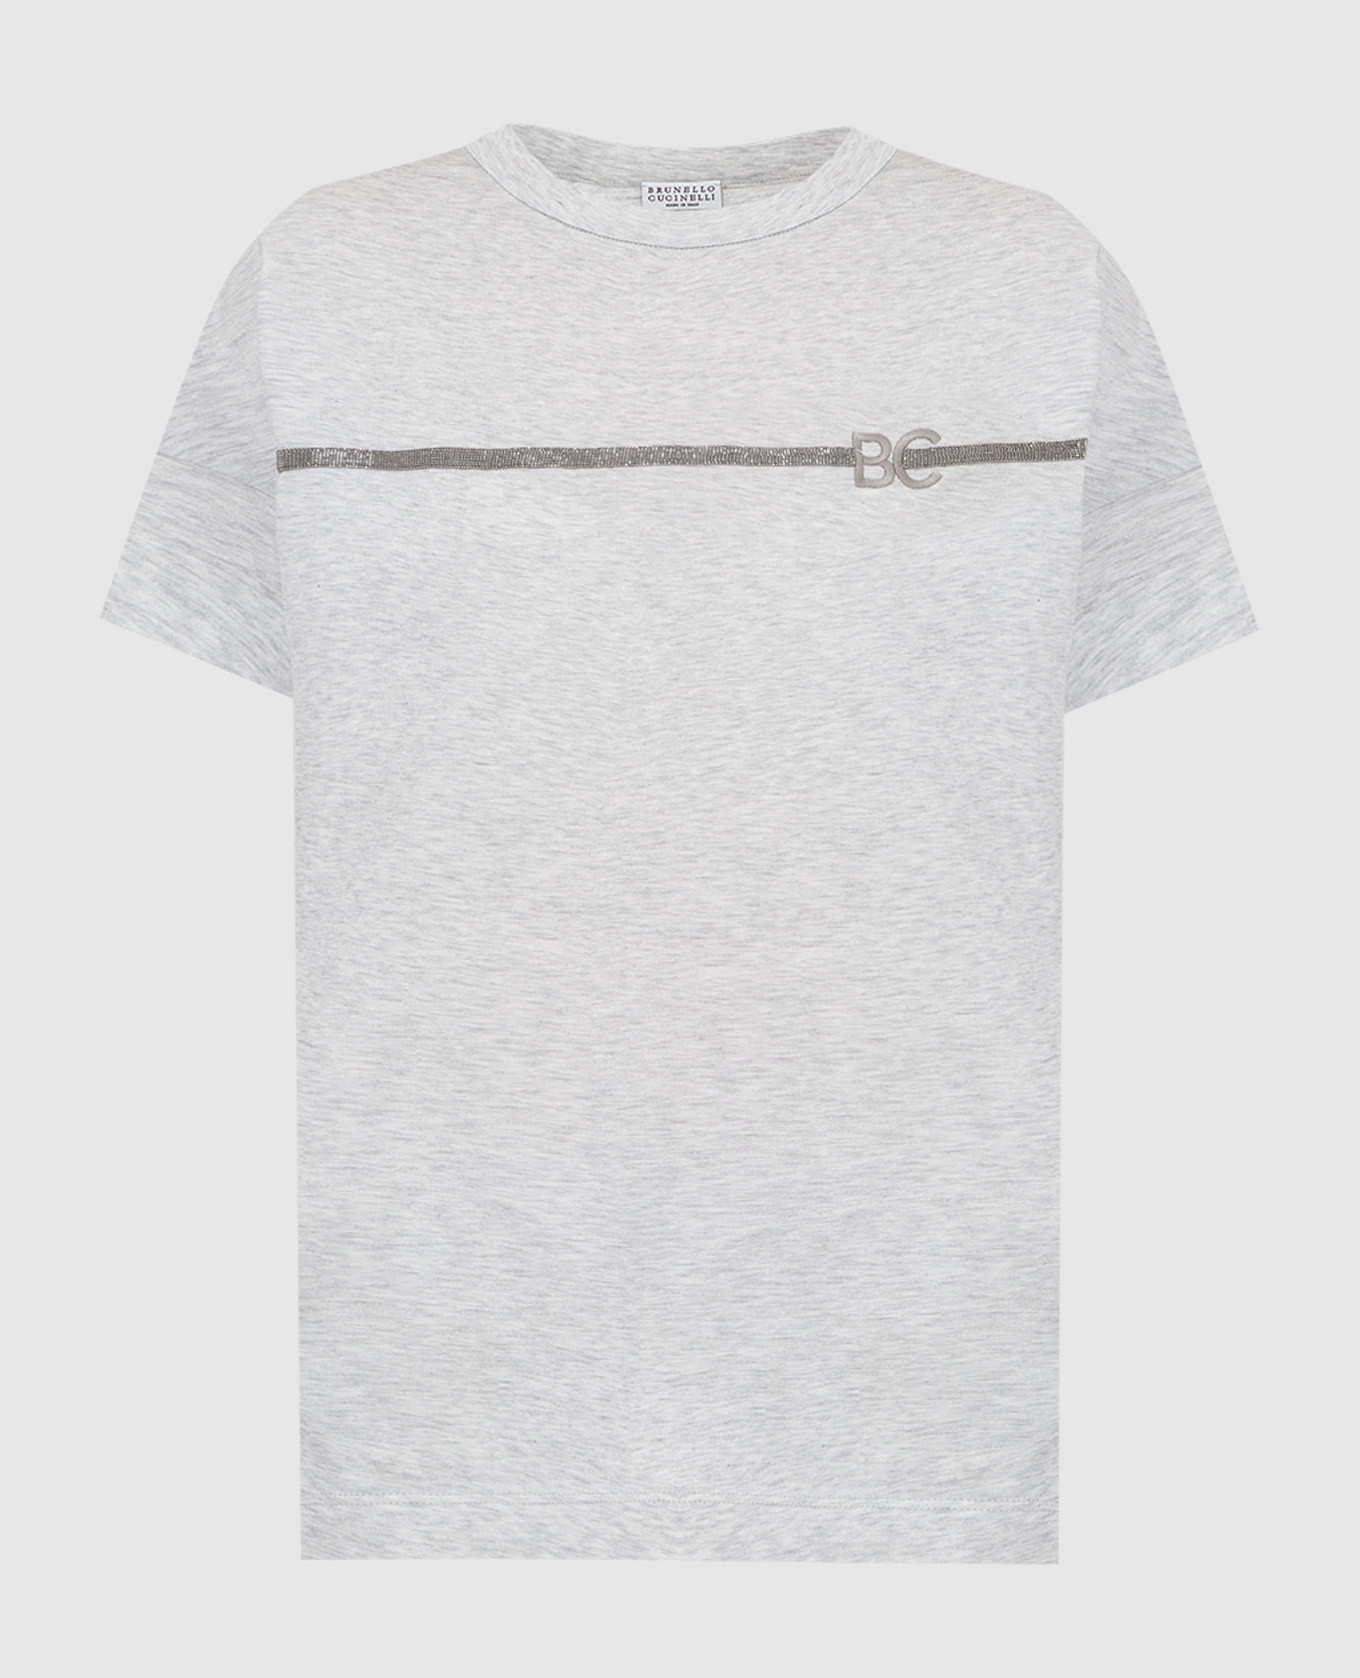 Светло-серая футболка с цепочками и монограммой